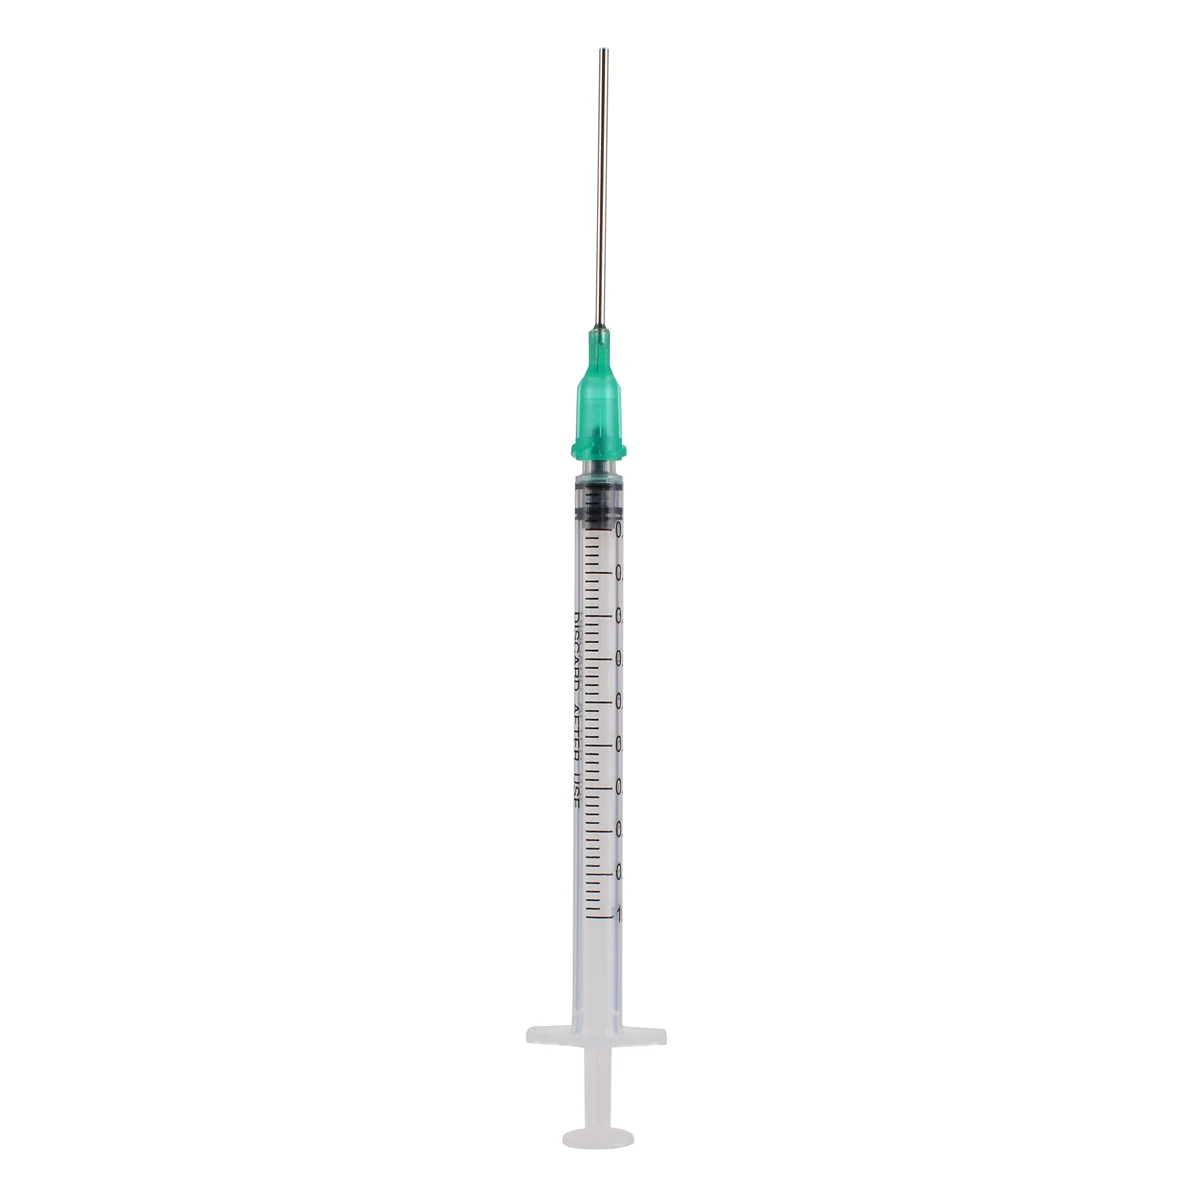 Syringe 1 ml